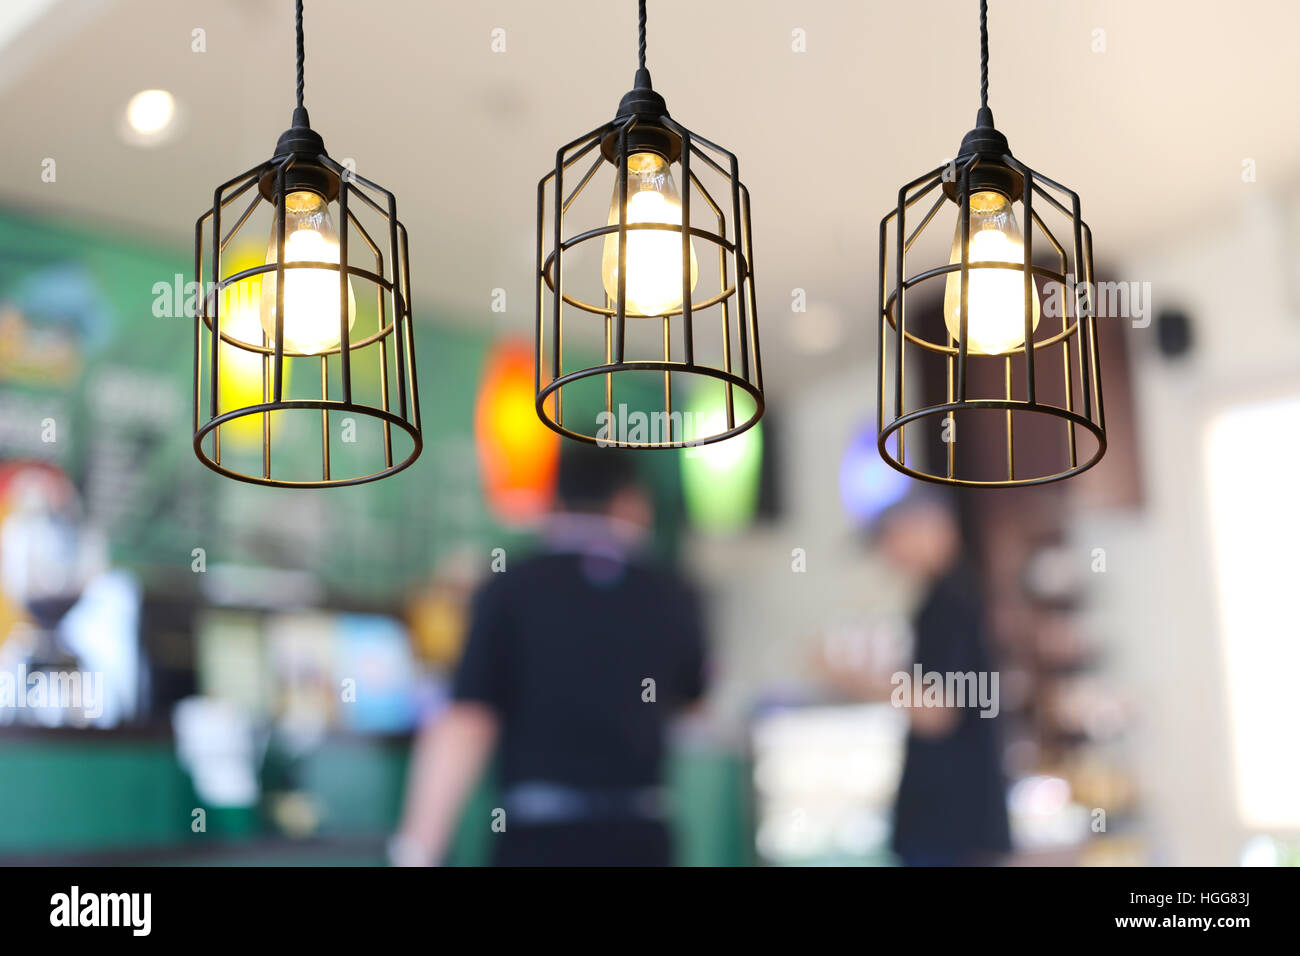 Lampes Vintage dans un restaurant,concept de l'intérieur avec des lumières. Banque D'Images